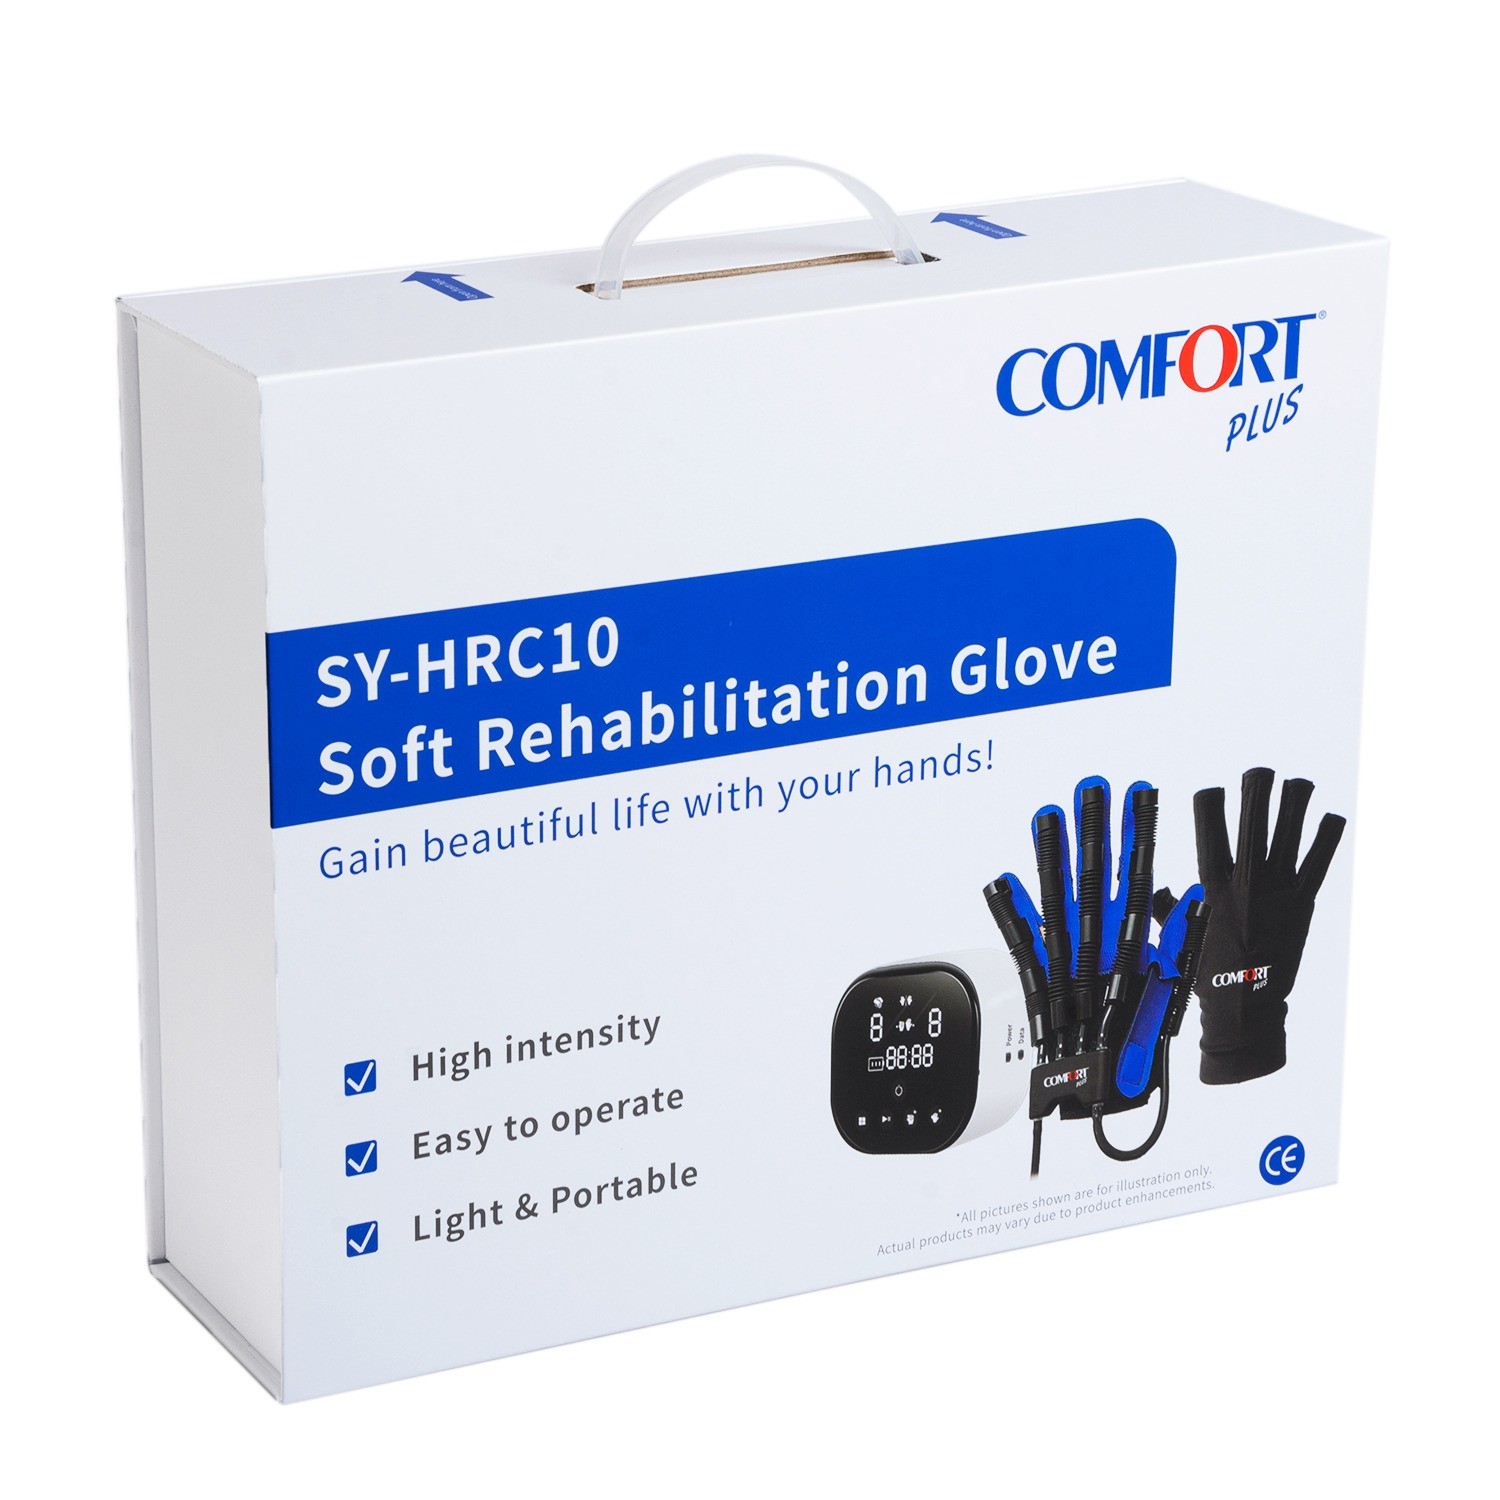 Comfort Plus HRC-10 Soft Rehabilitasyon Eldiveni - Robotik Eldiven